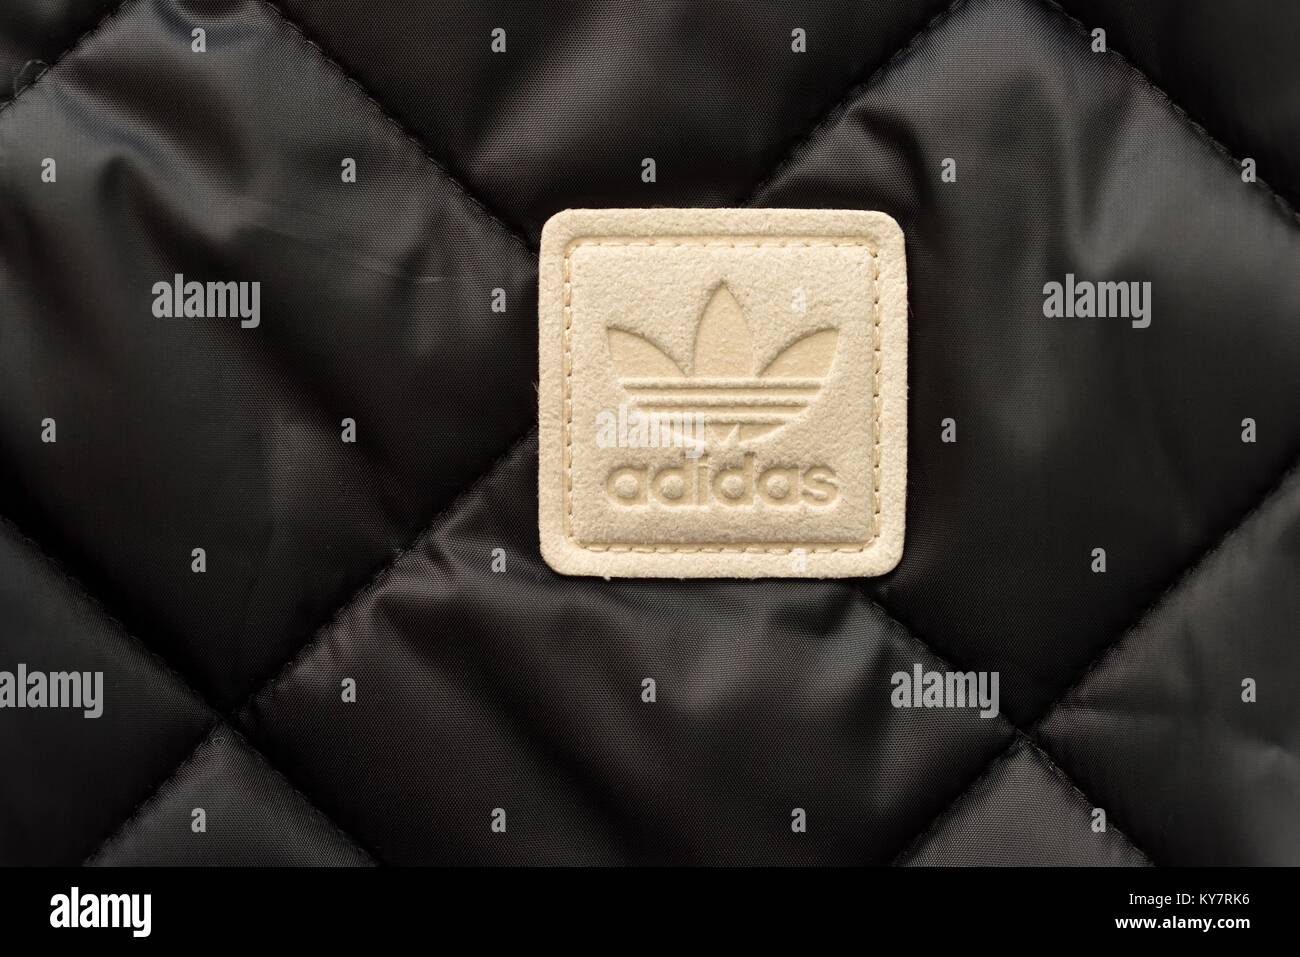 Adidas kleidung -Fotos und -Bildmaterial in hoher Auflösung – Alamy